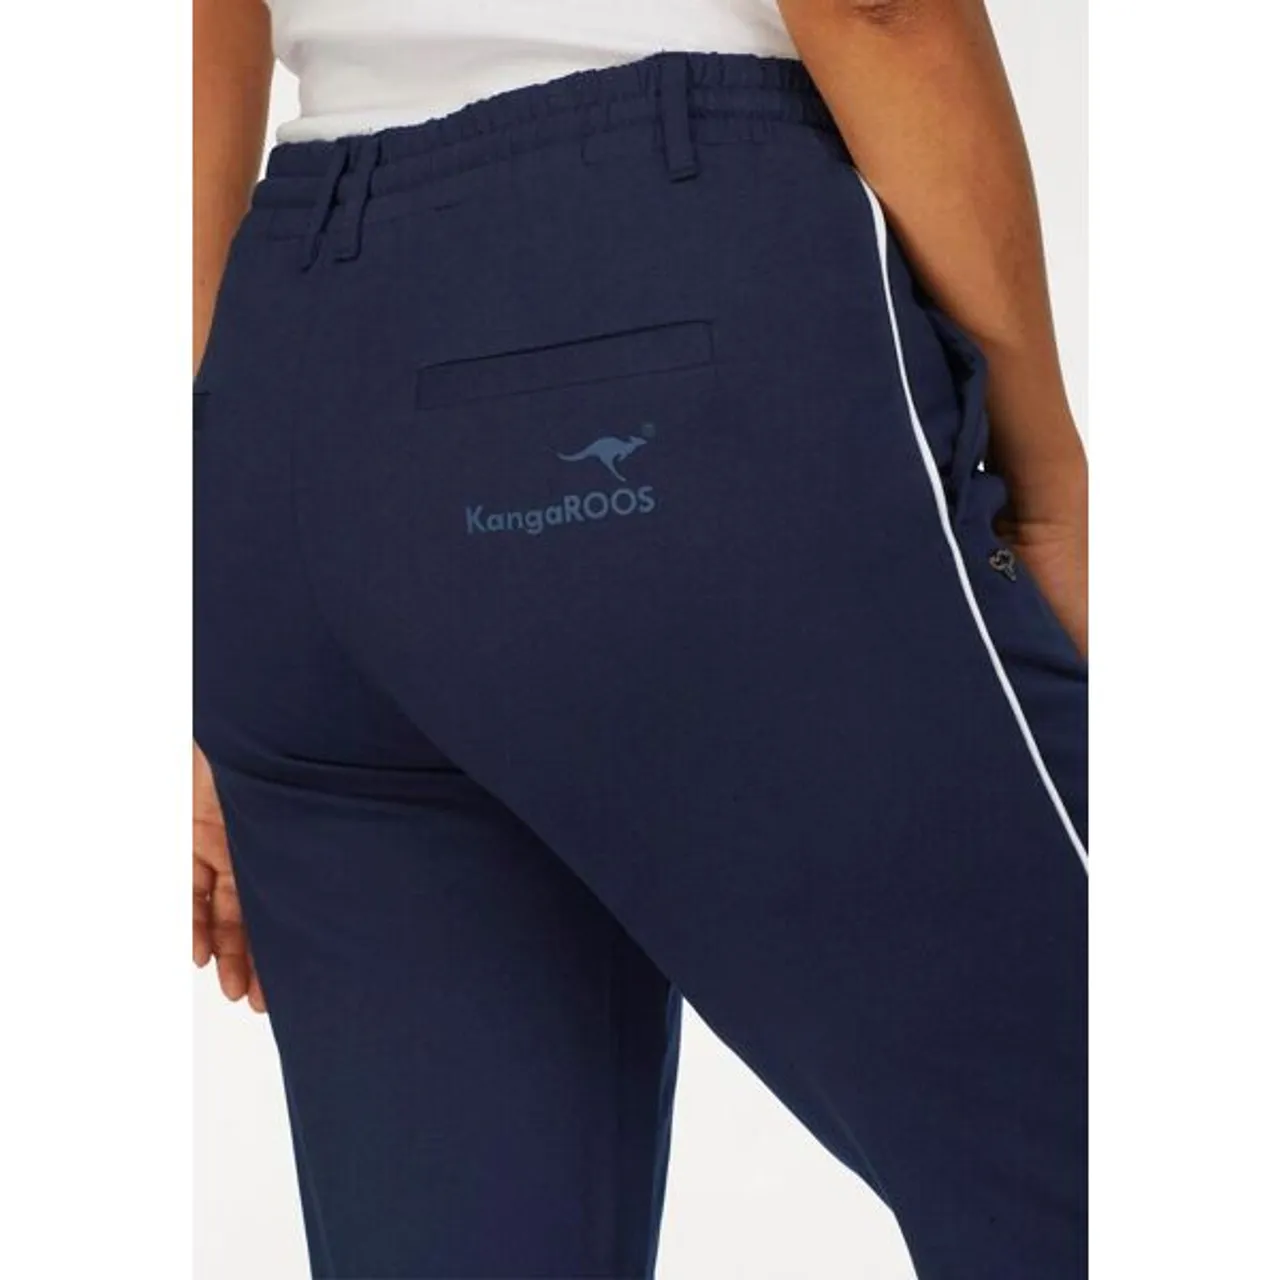 Jogger Pants KANGAROOS Gr. 34, N-Gr, blau (marine) Damen Hosen High-Waist-Hosen mit seitlichem Kontraststreifen